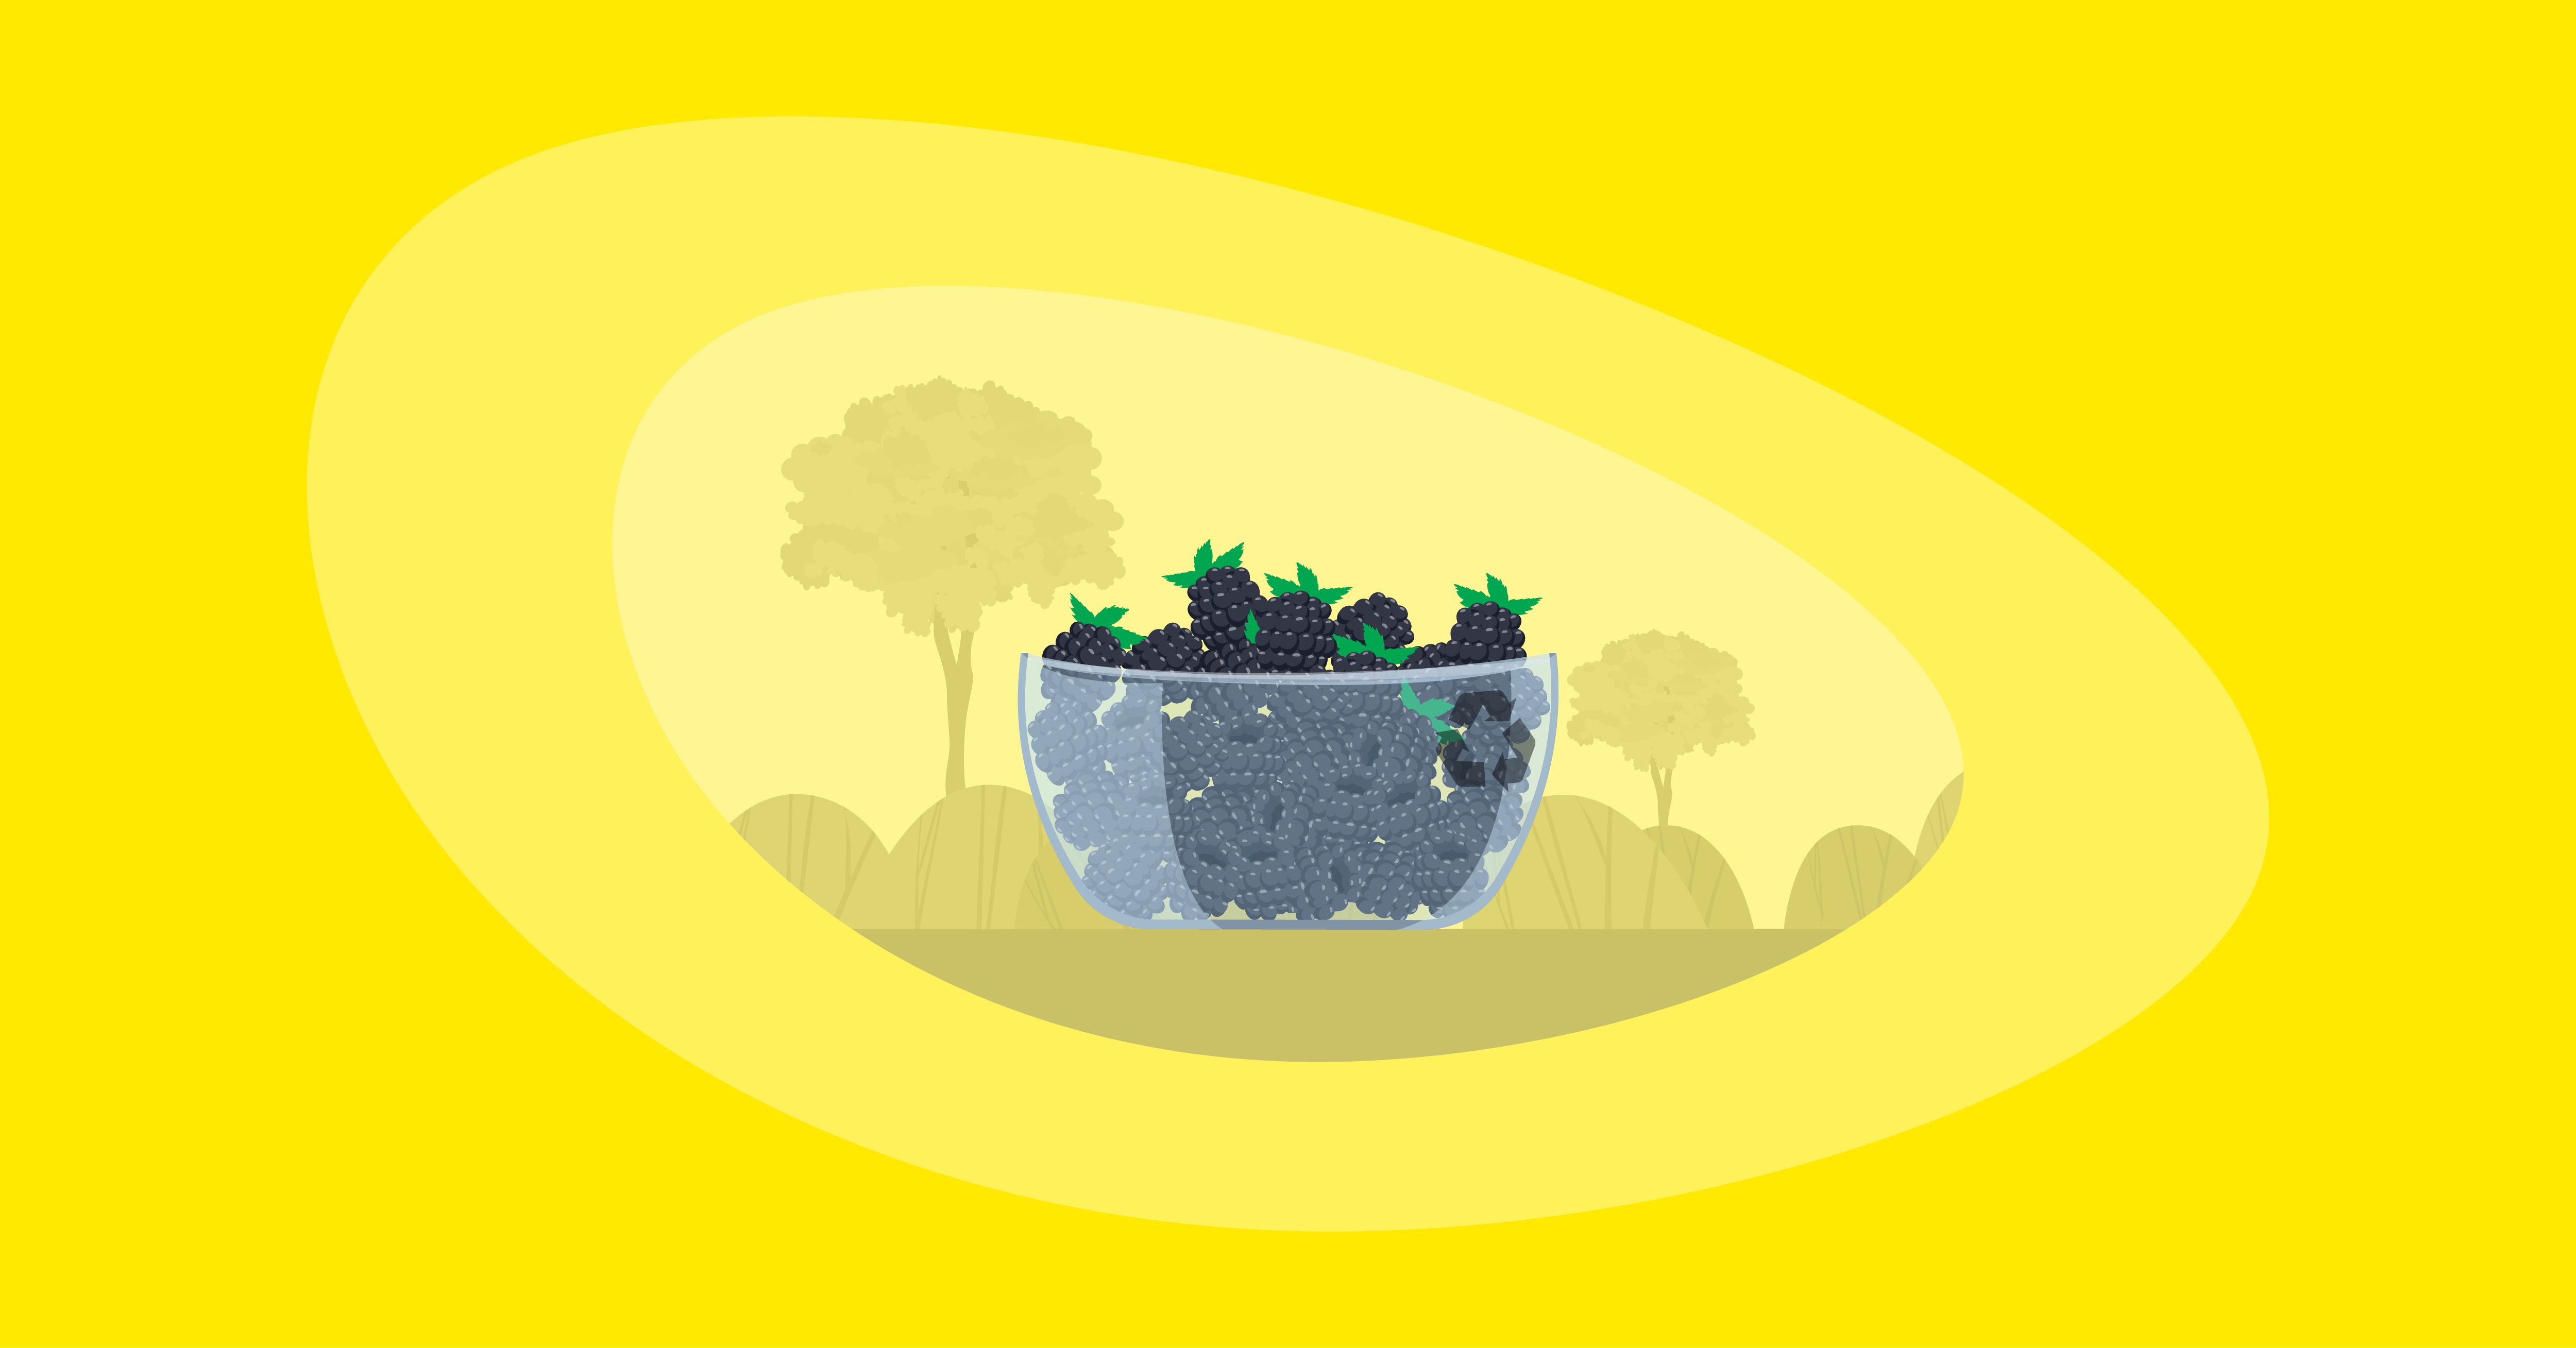 Illustration of blackberries inside a glass bowl